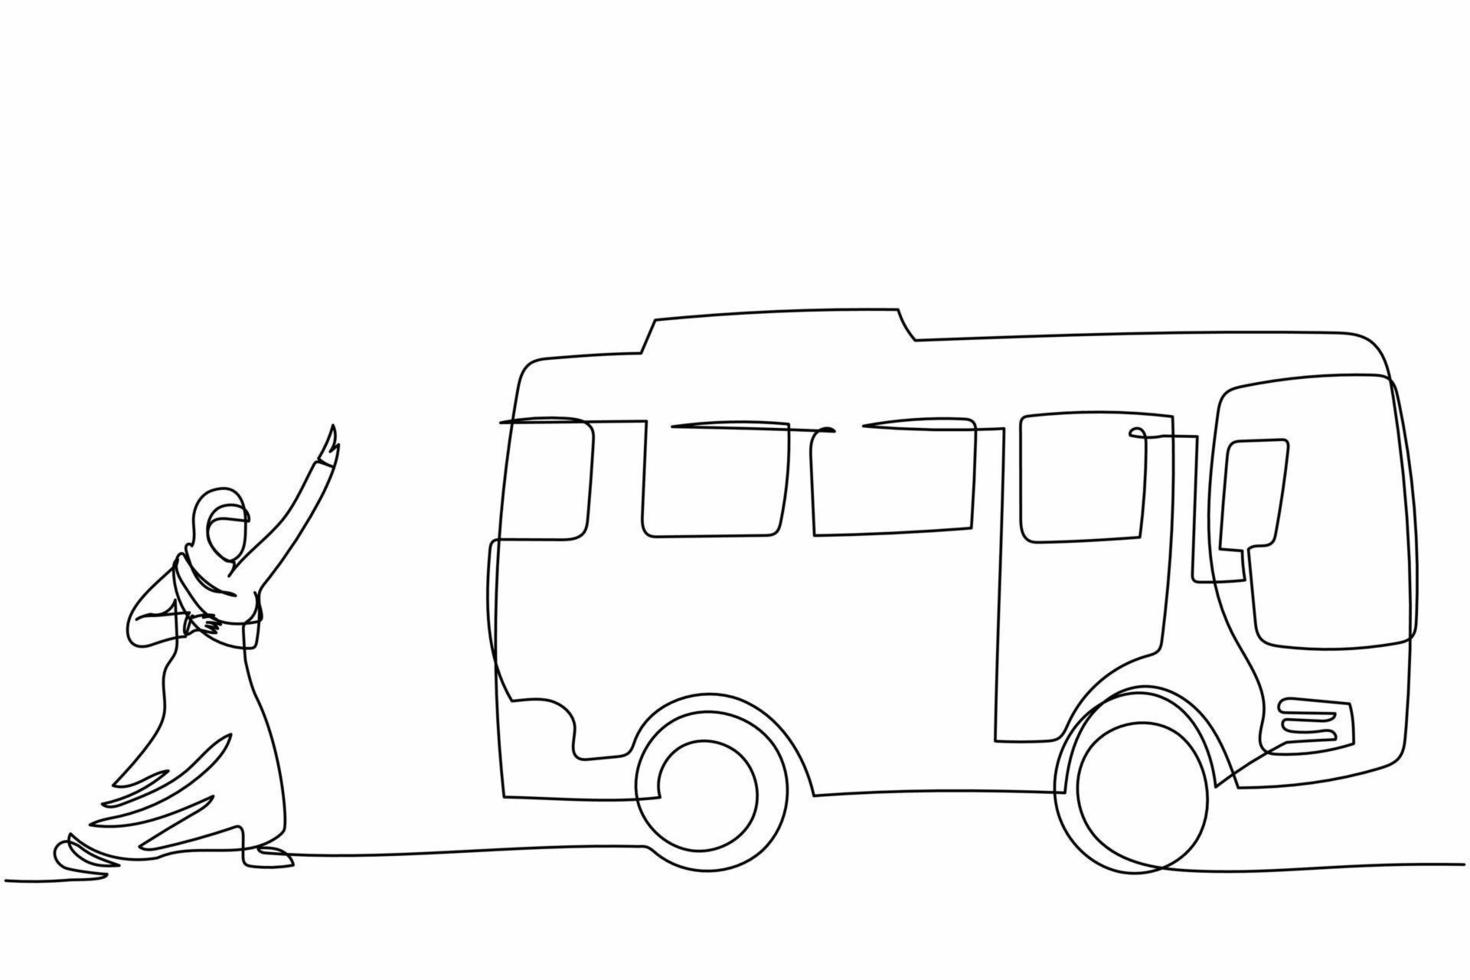 singolo disegno a tratteggio donna d'affari araba che corre a caccia di autobus. la lavoratrice ritardataria corre in autobus per andare in ufficio. persone della vita urbana nelle grandi città. illustrazione grafica vettoriale di progettazione di linea continua